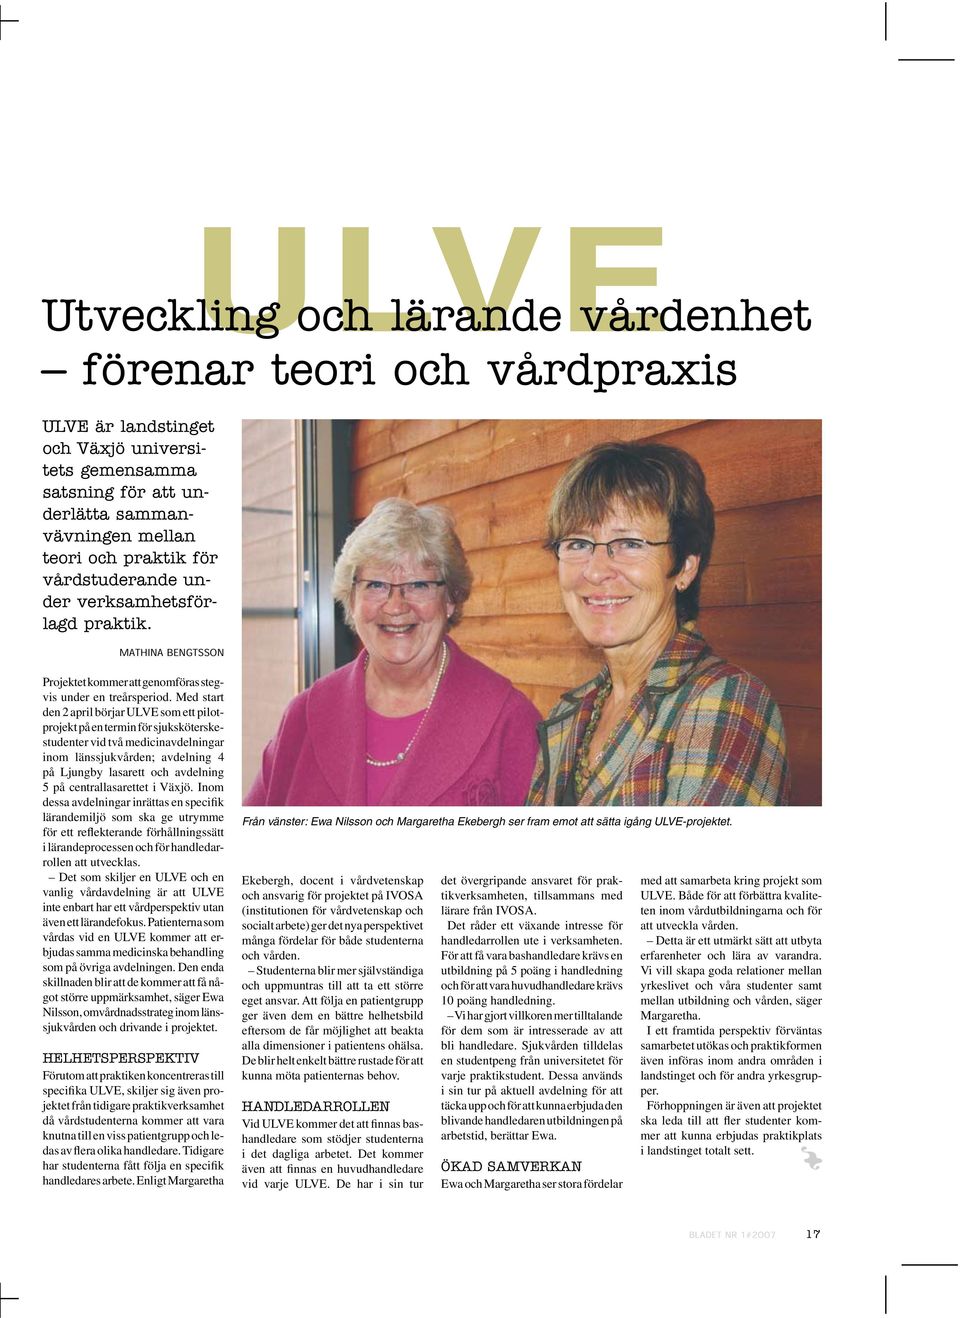 Med start den 2 april börjar ULVE som ett pilotprojekt på en termin för sjuksköterskestudenter vid två medicinavdelningar inom länssjukvården; avdelning 4 på Ljungby lasarett och avdelning 5 på